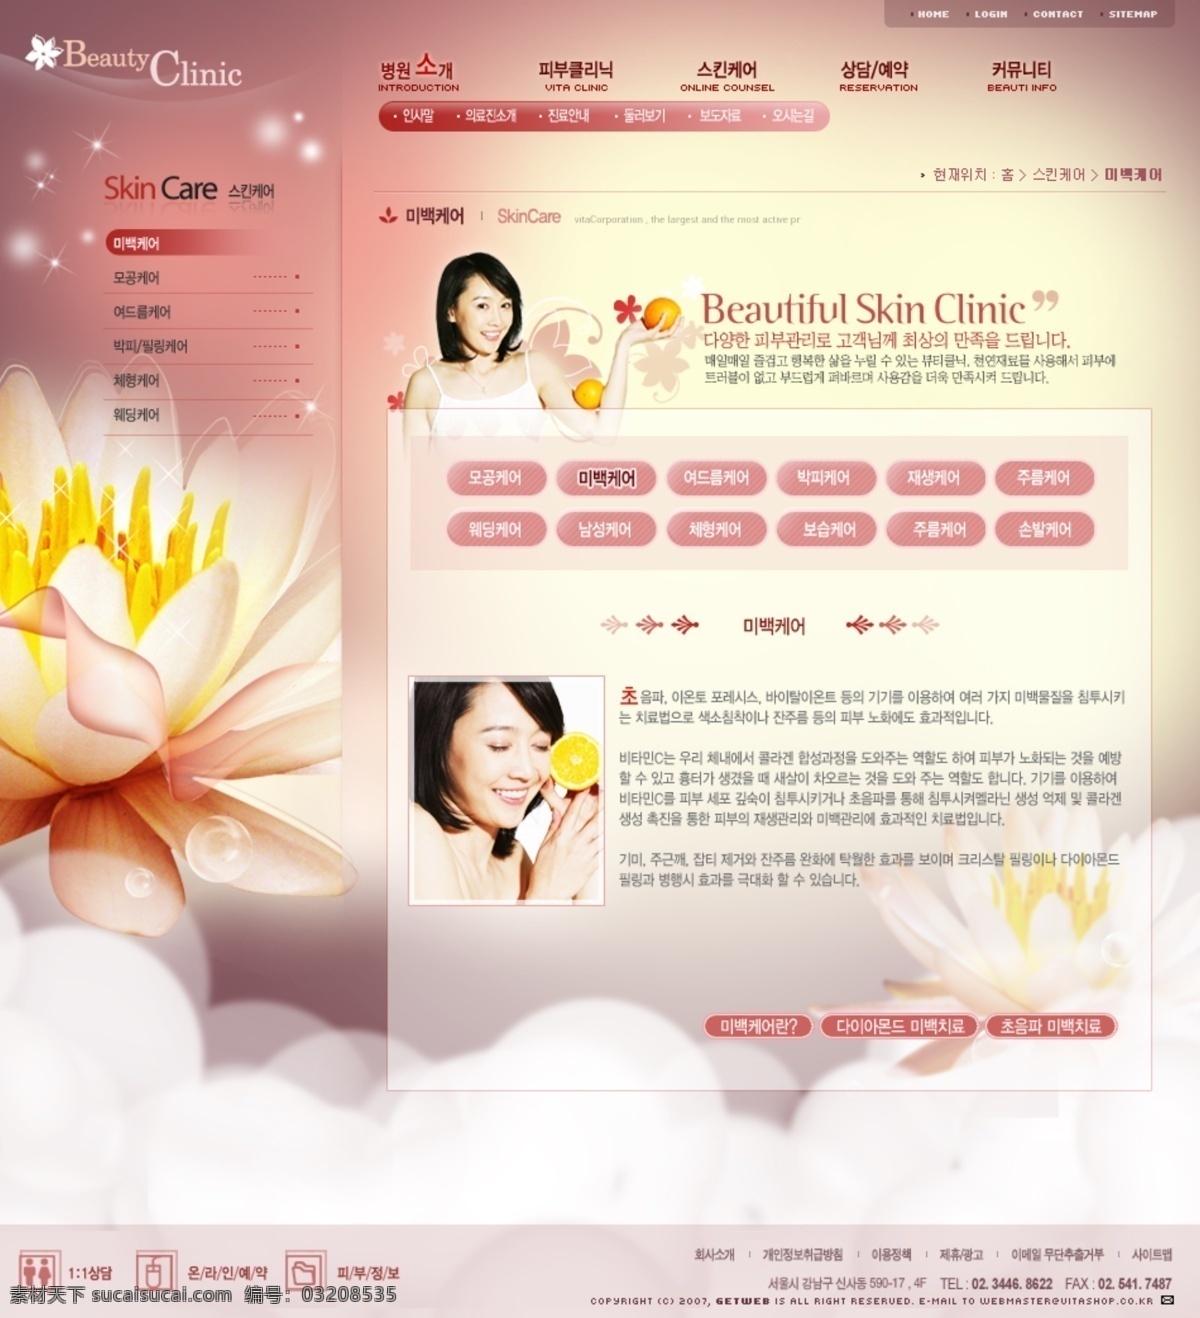 幻境 花朵 女性 网站 模板 按钮 内容页 网站模板 幻境效果 花朵女性 最终页 结果页 网页素材 网页模板